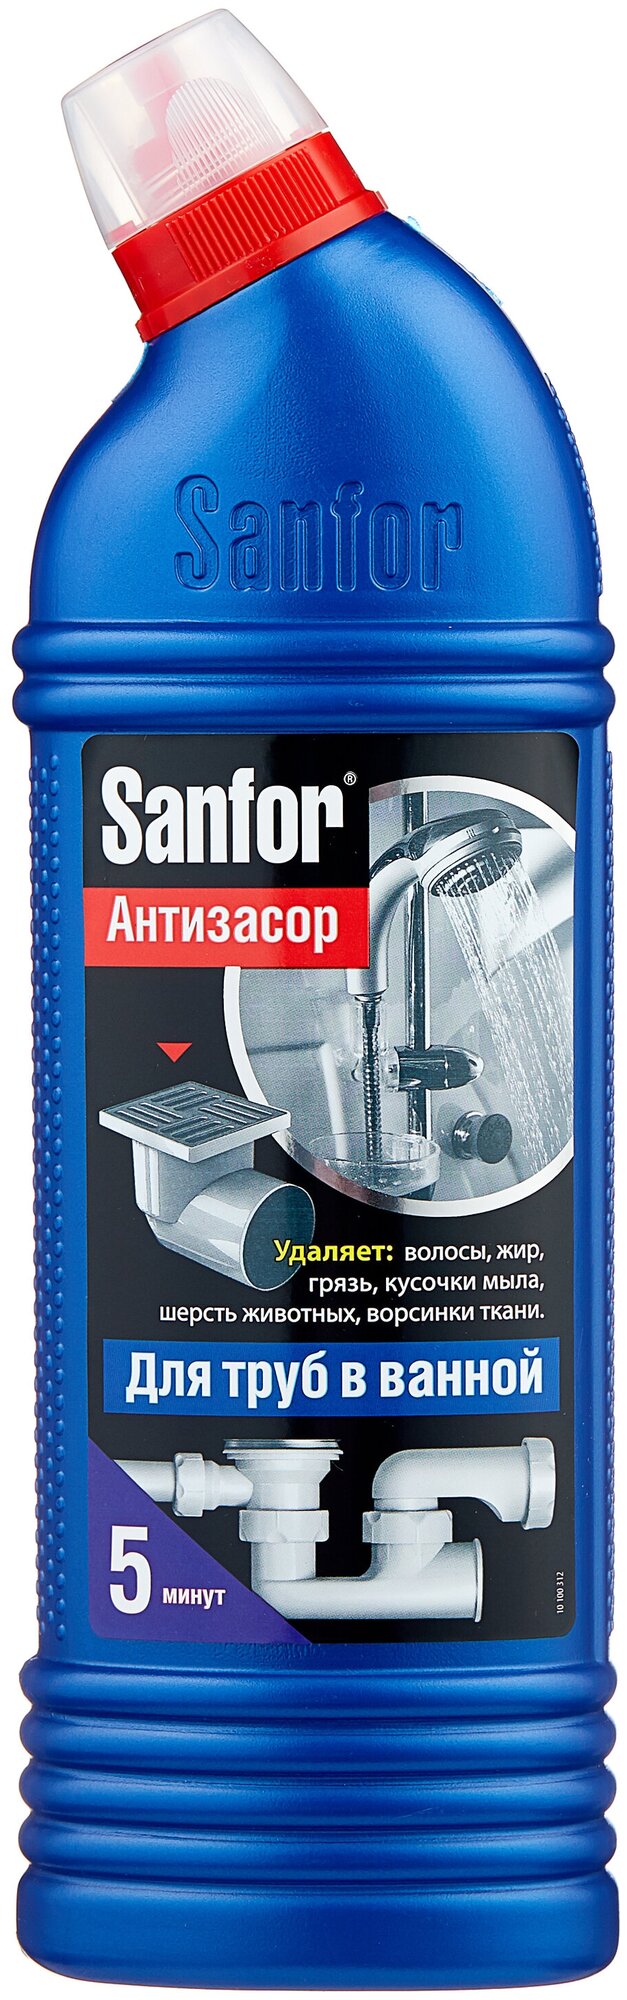 Средство для прочистки труб Sanfor Антизасор для труб в ванной, 0,75 л - фото №10